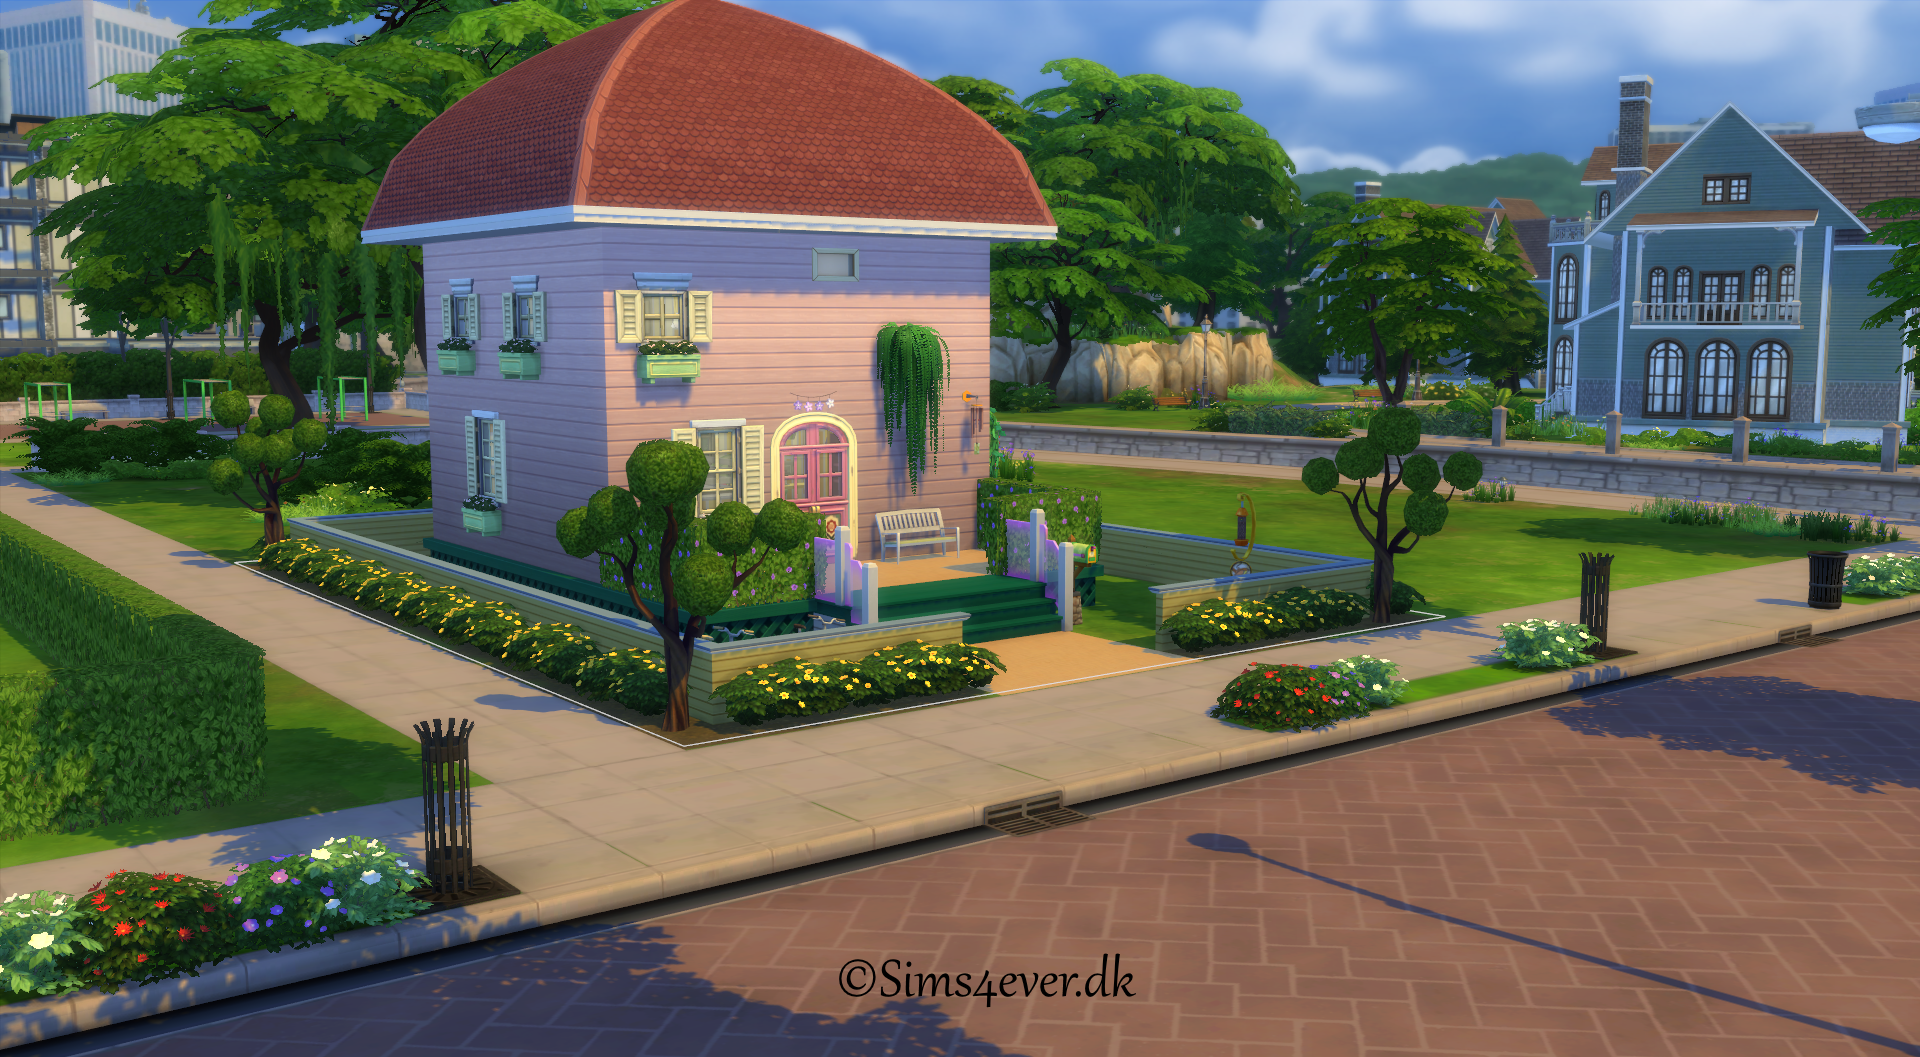 Paddehatte huset (Tiny house) Sims 4